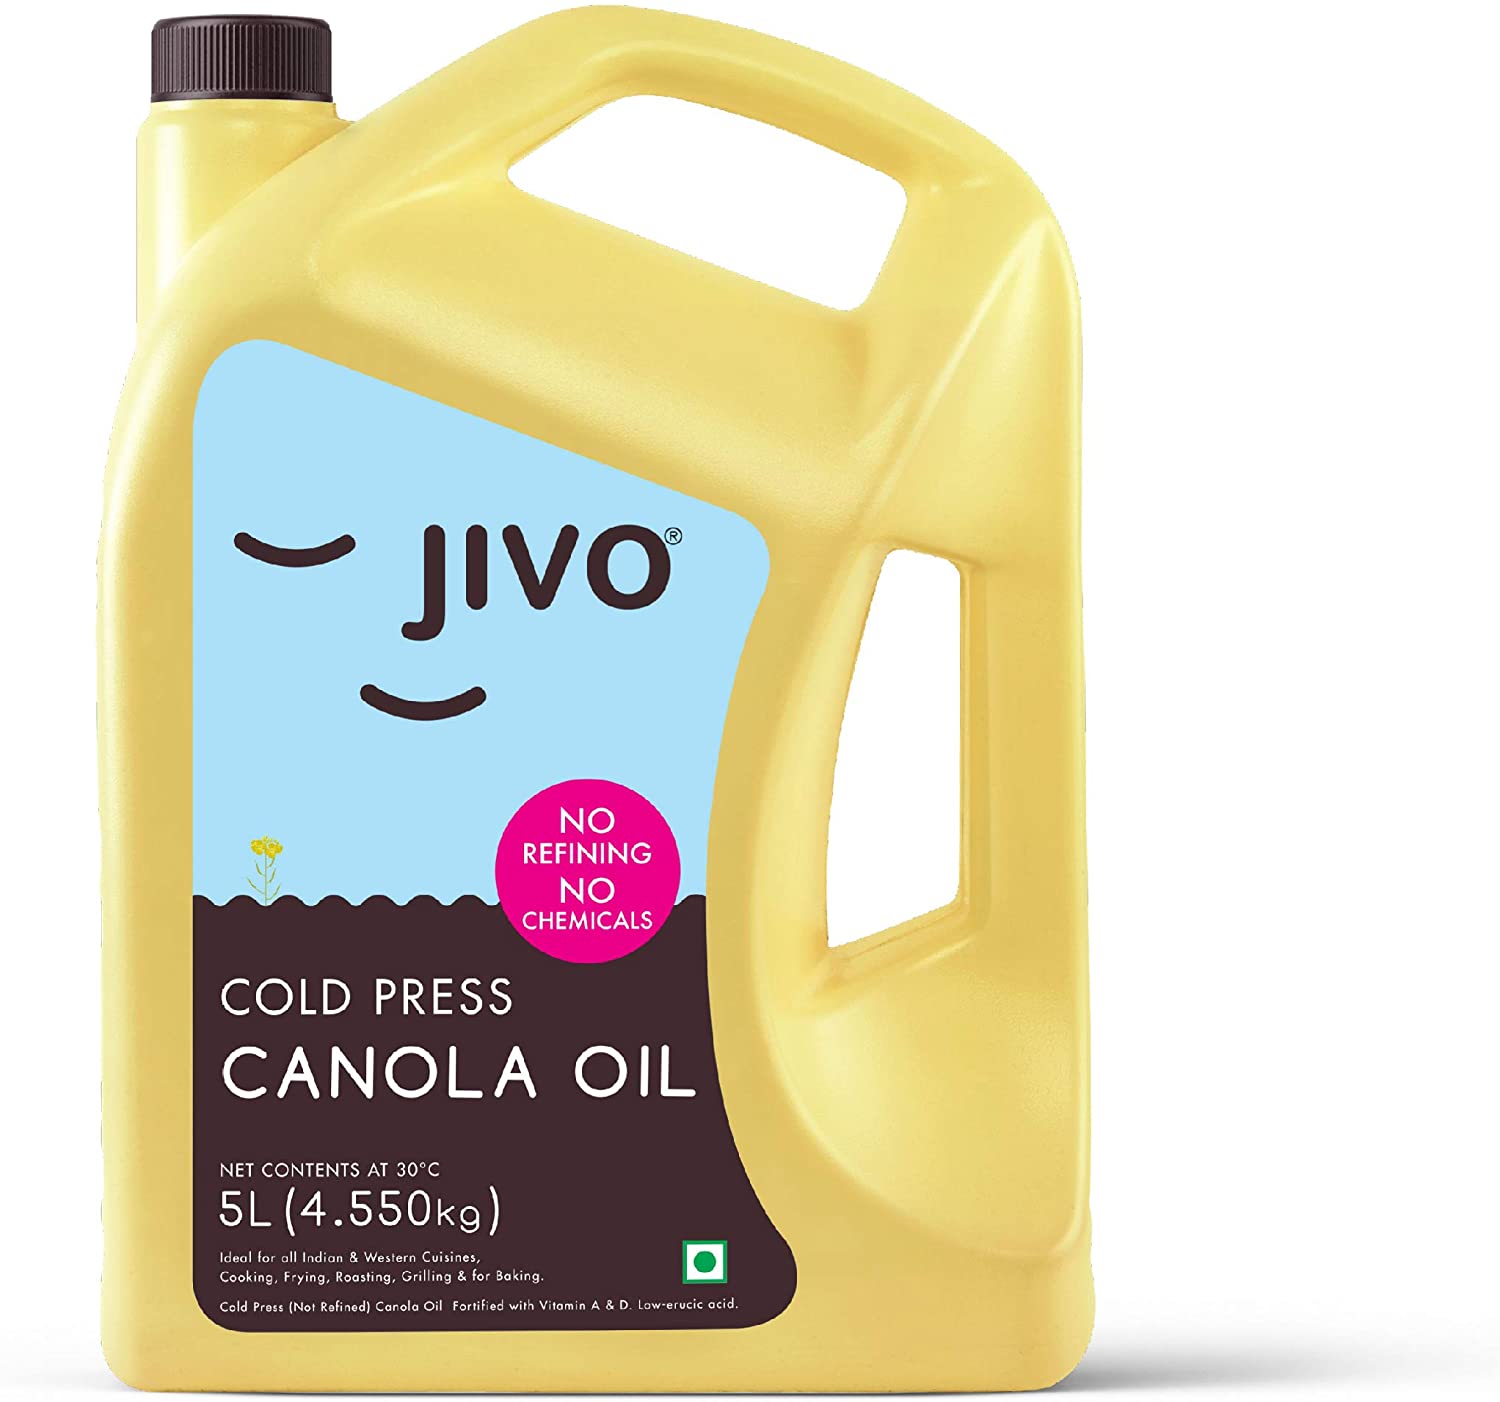 JIVO Cold pressed Canola Oil